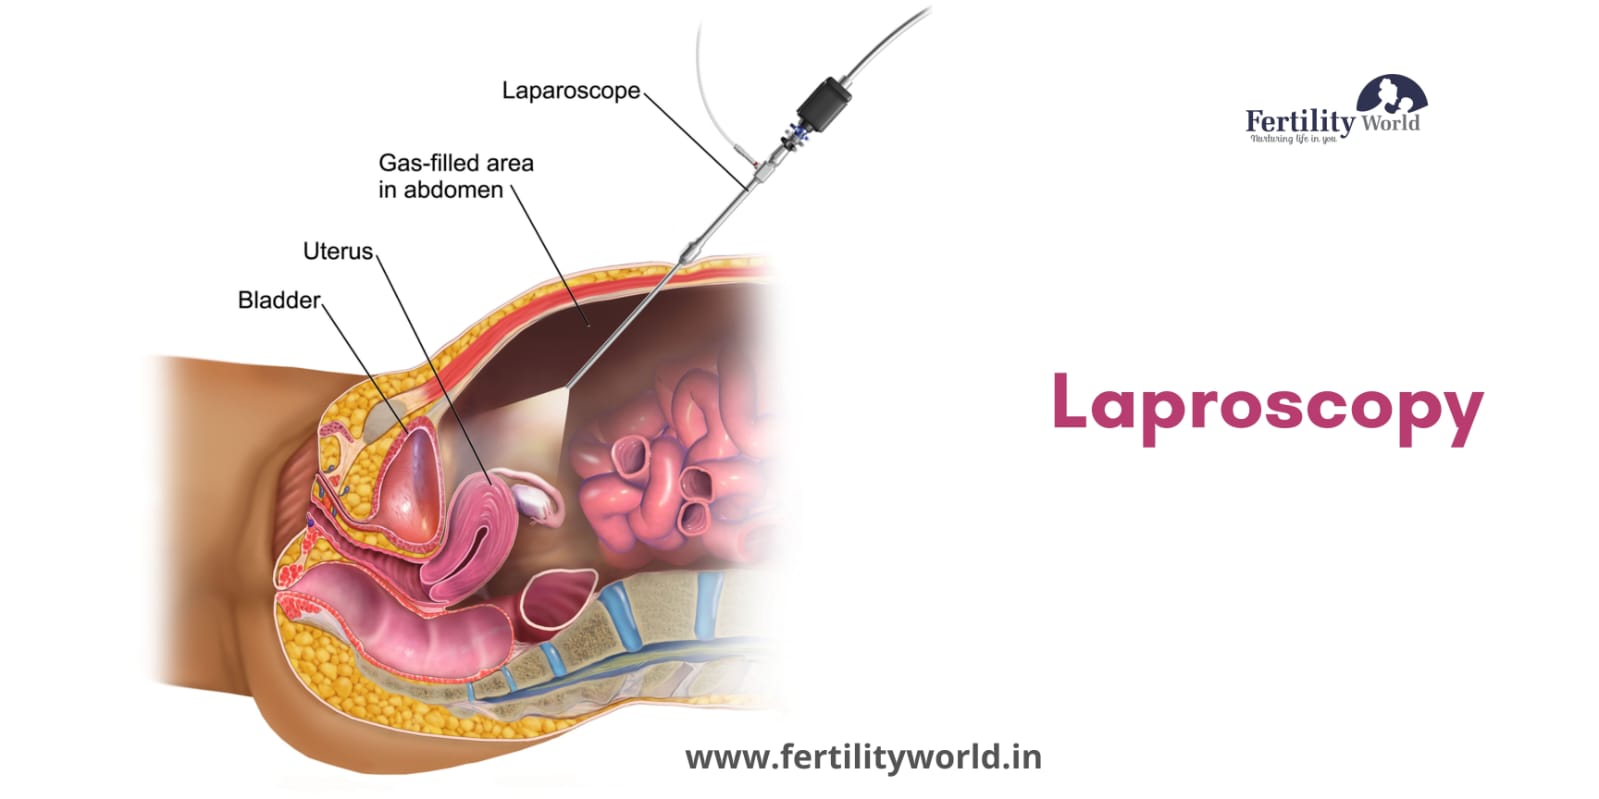 Laparoscopic cost in India